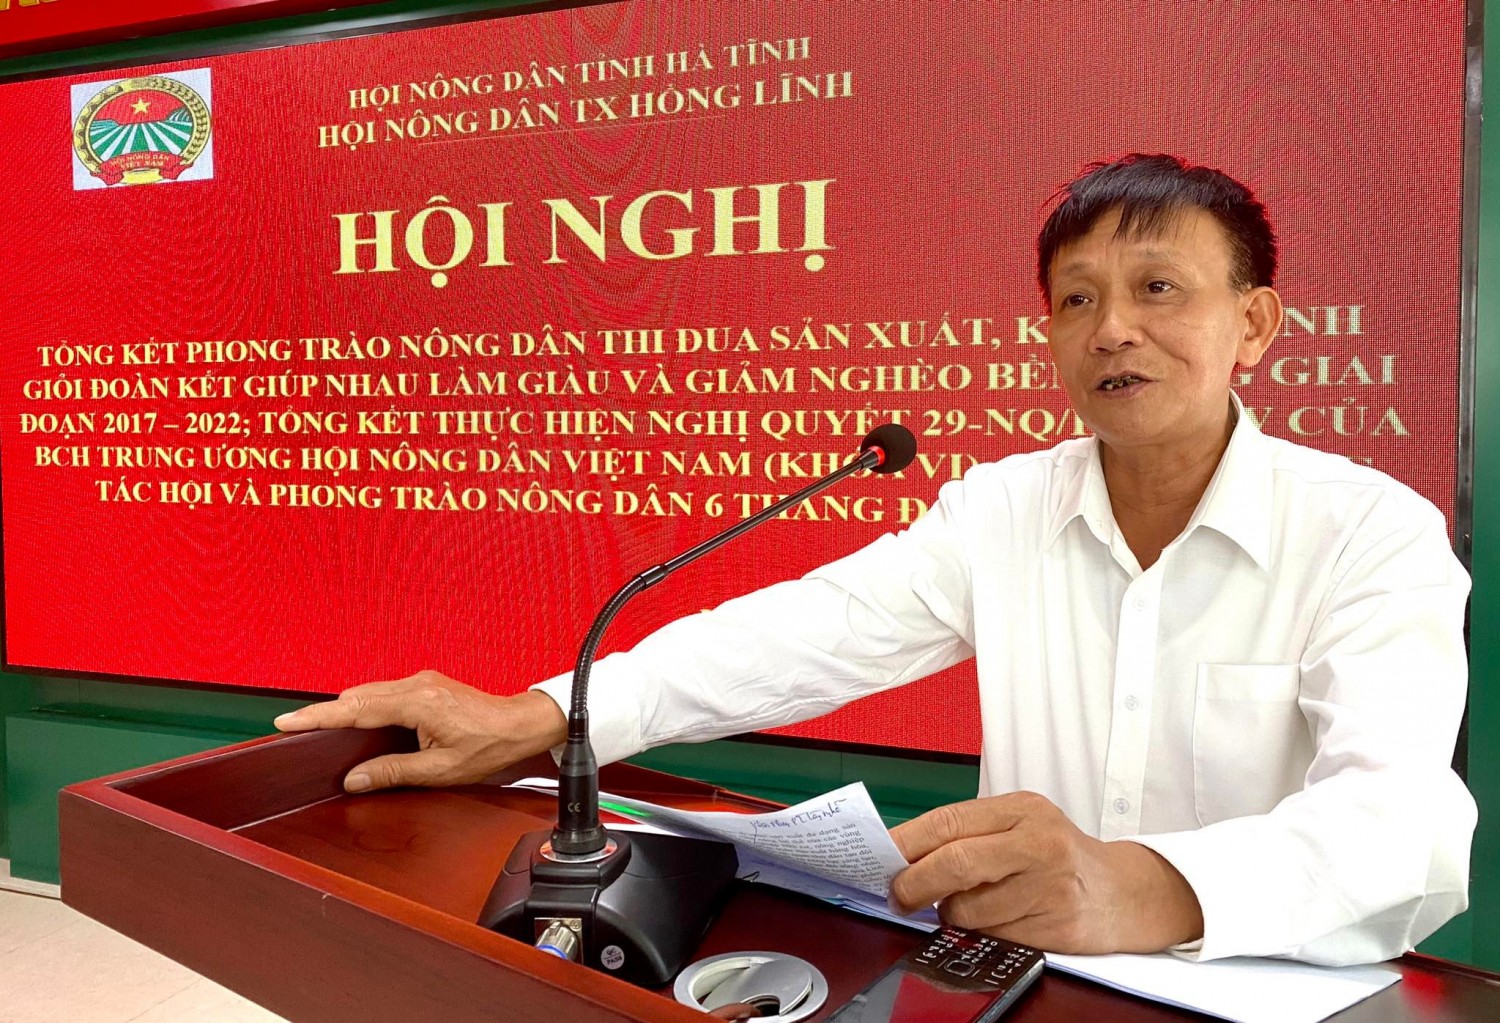 Đồng chí Trần Trung Thành, Phó Chủ tịch thường trực Hội nông dân tỉnh phát biểu chỉ đạo tại hội nghị